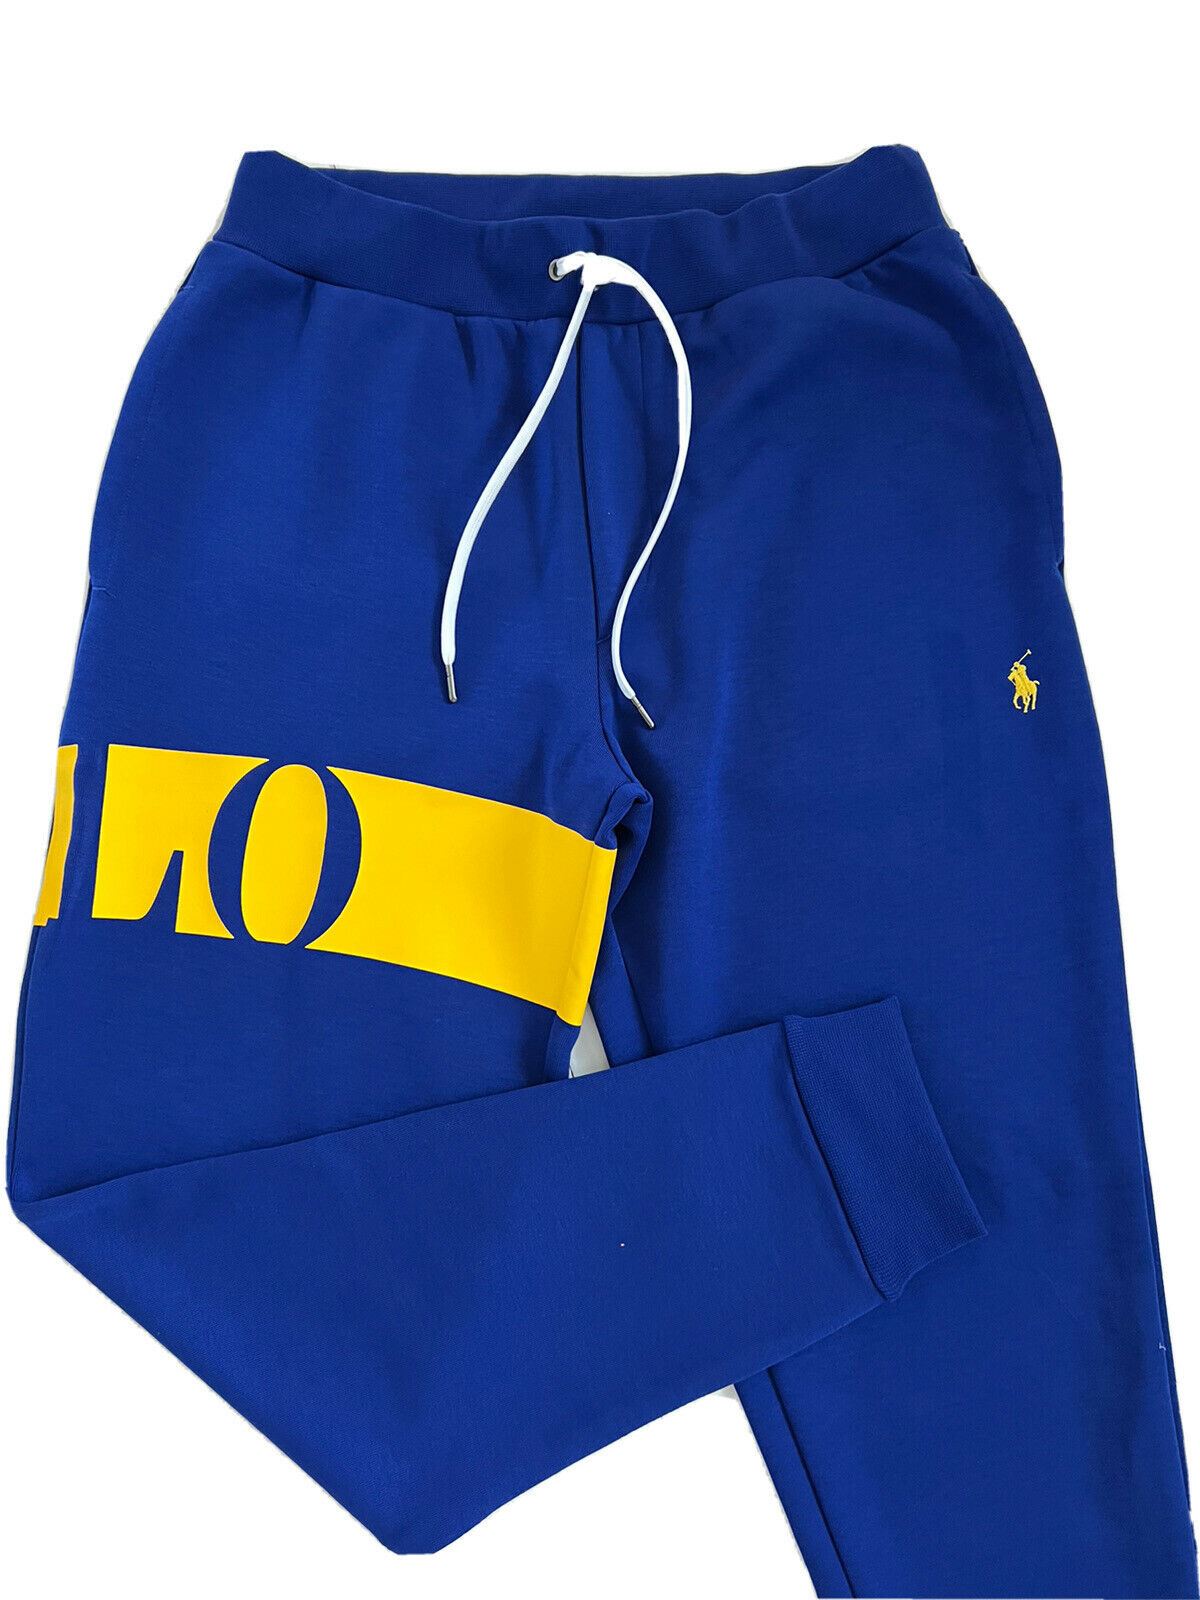 Neu mit Etikett: Polo Ralph Lauren Jungen-Freizeithose mit großem Polo-Logo in Blau, Größe L